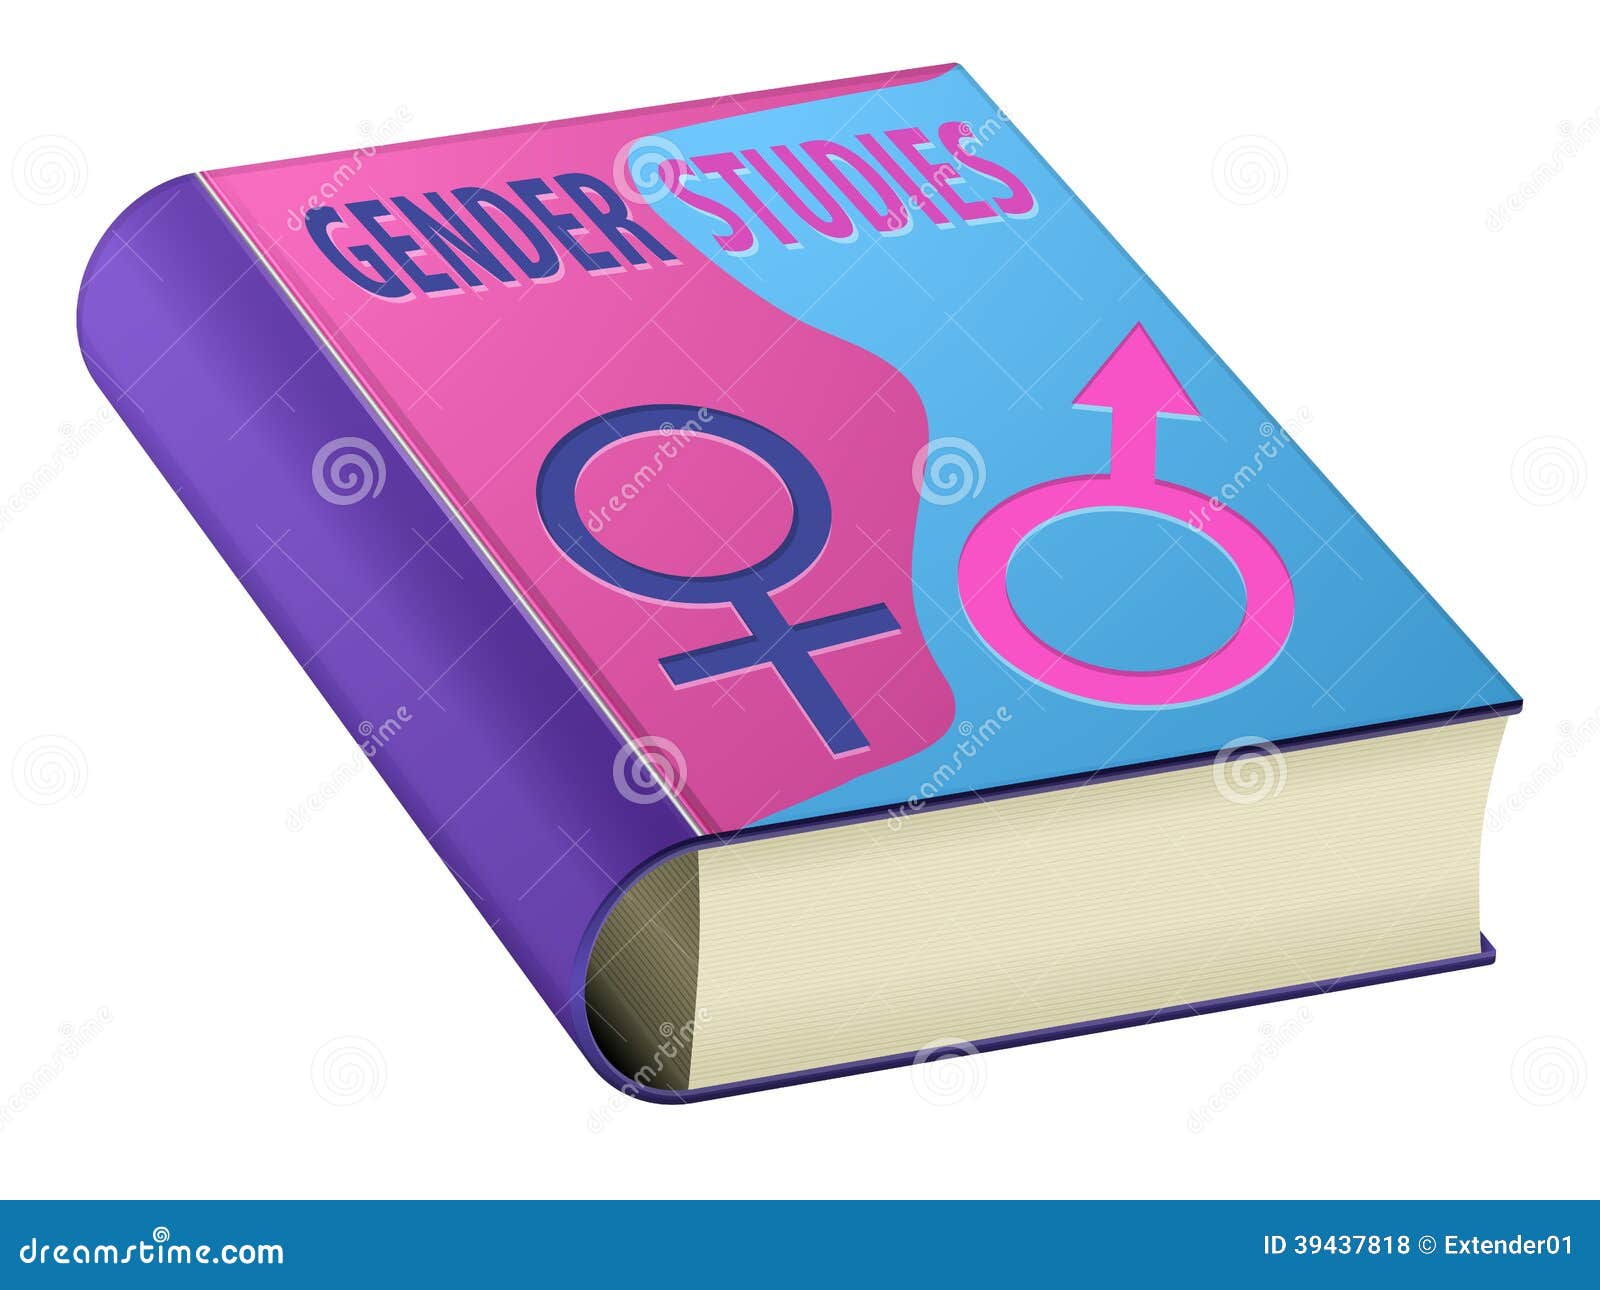 gender studies book